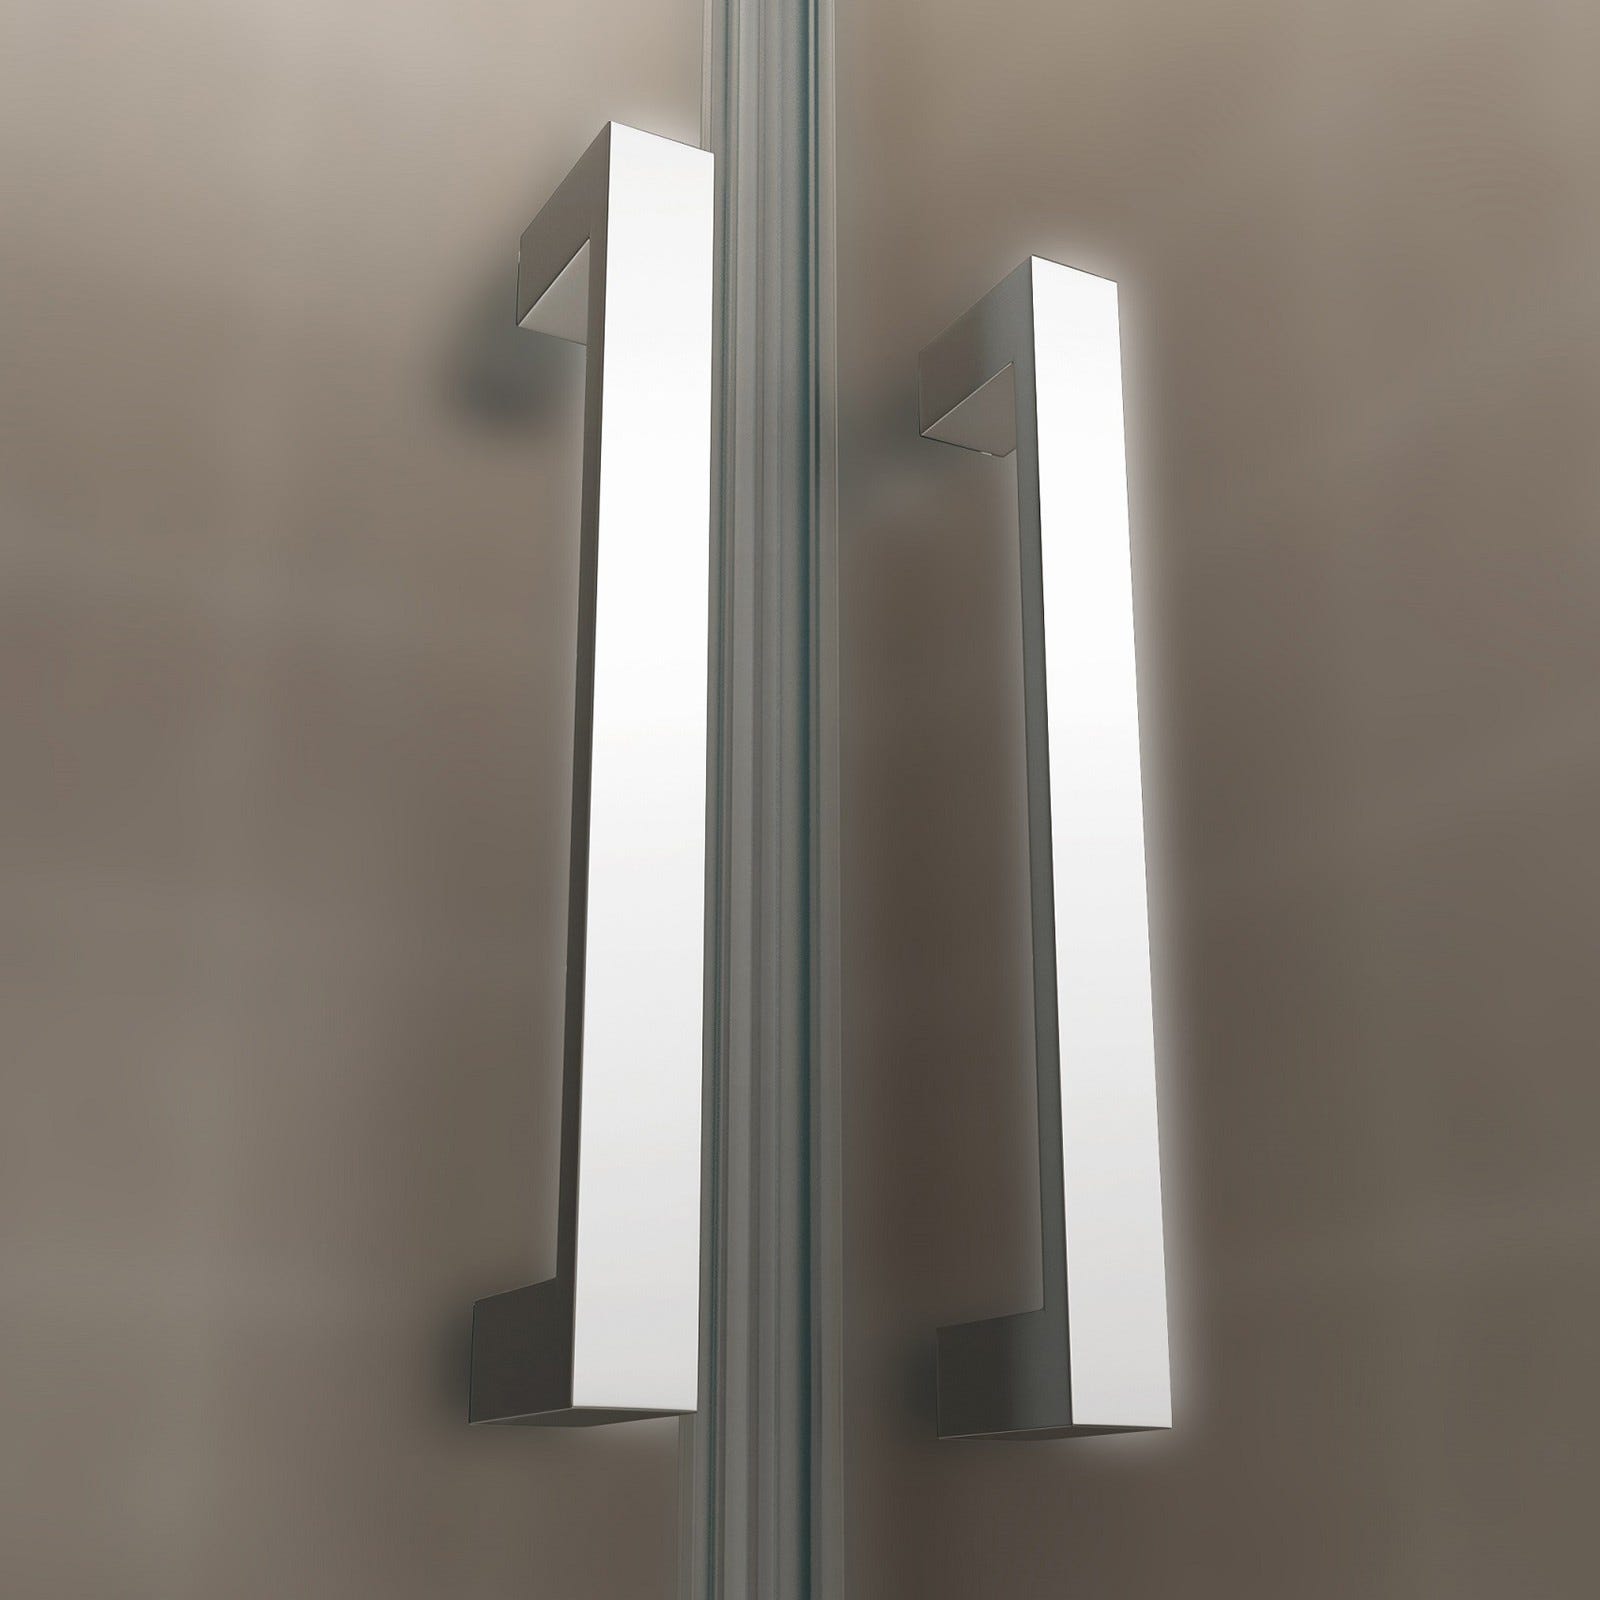 KAYA Porte de douche H 180 largeur réglable 86 à 89 cm verre opaque 4